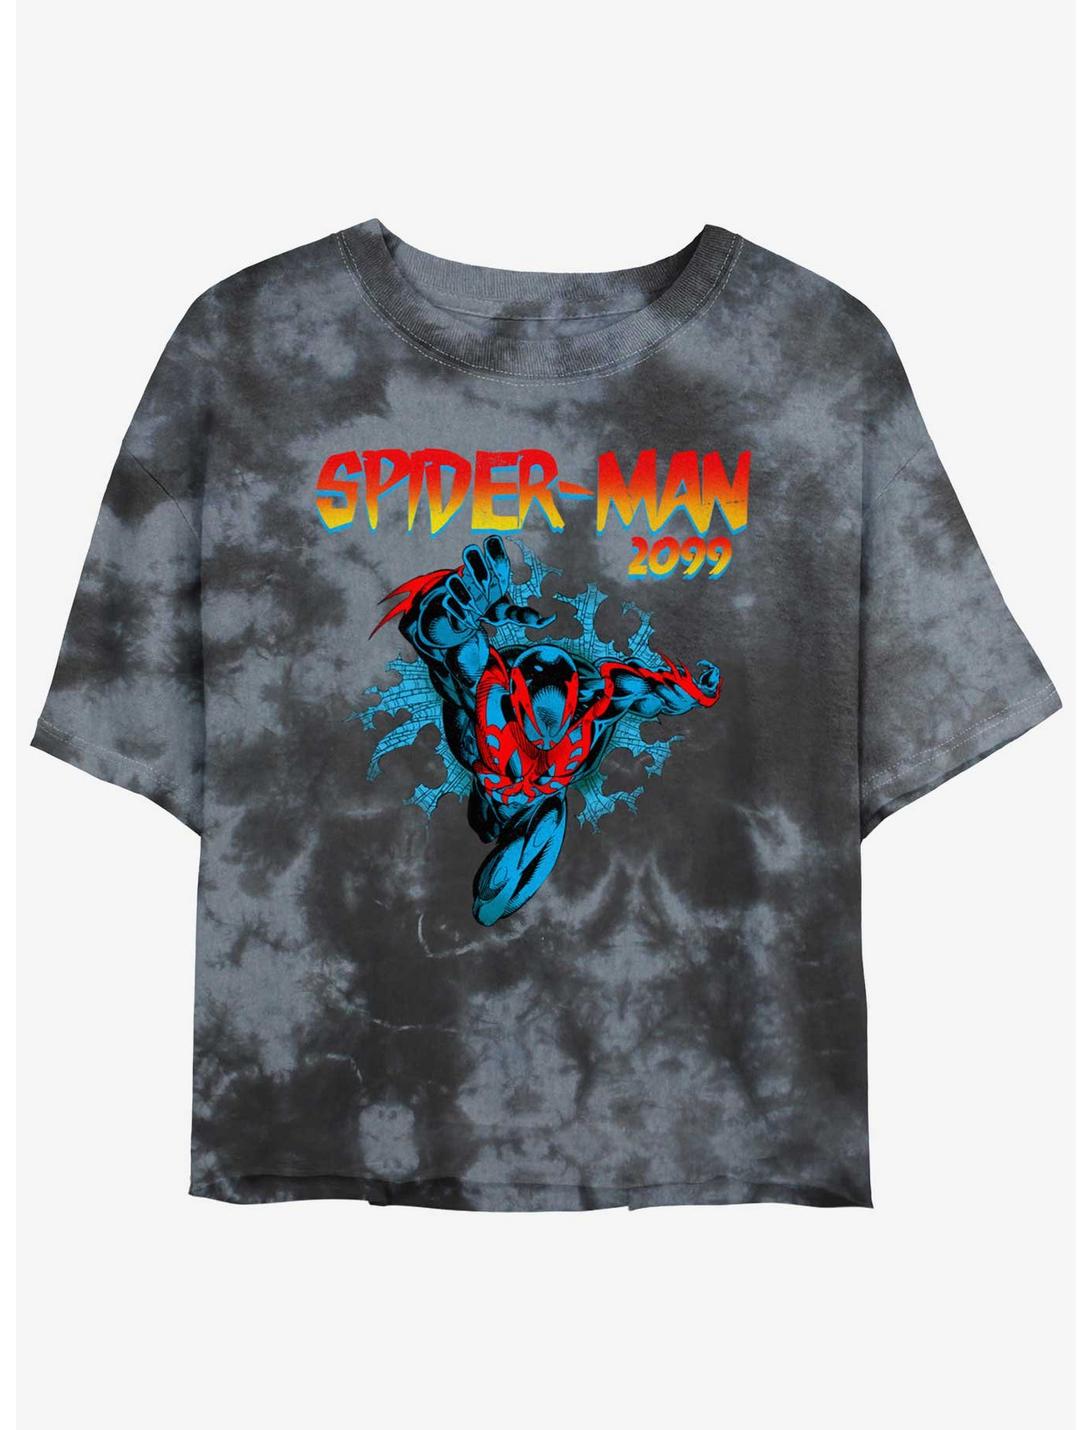 Marvel Spider-Man-2099 Womens Tie-Dye Crop T-Shirt, BLKCHAR, hi-res